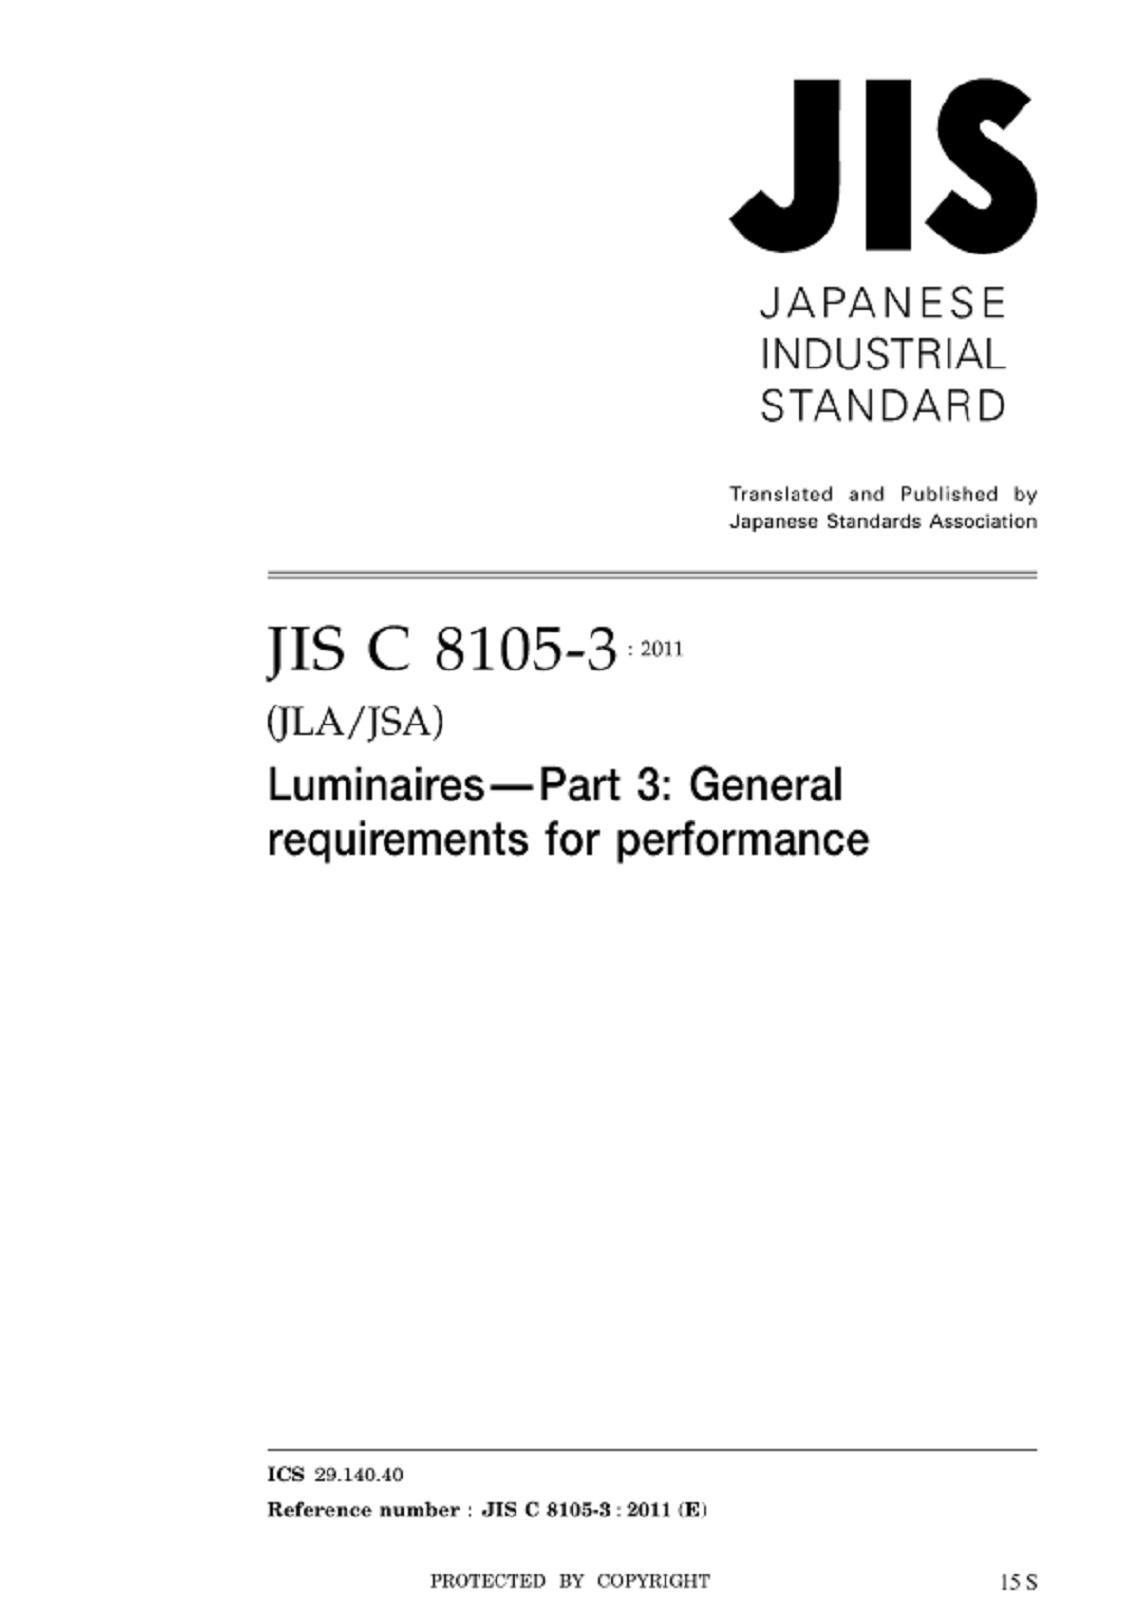 JIS C 8105-3:2011